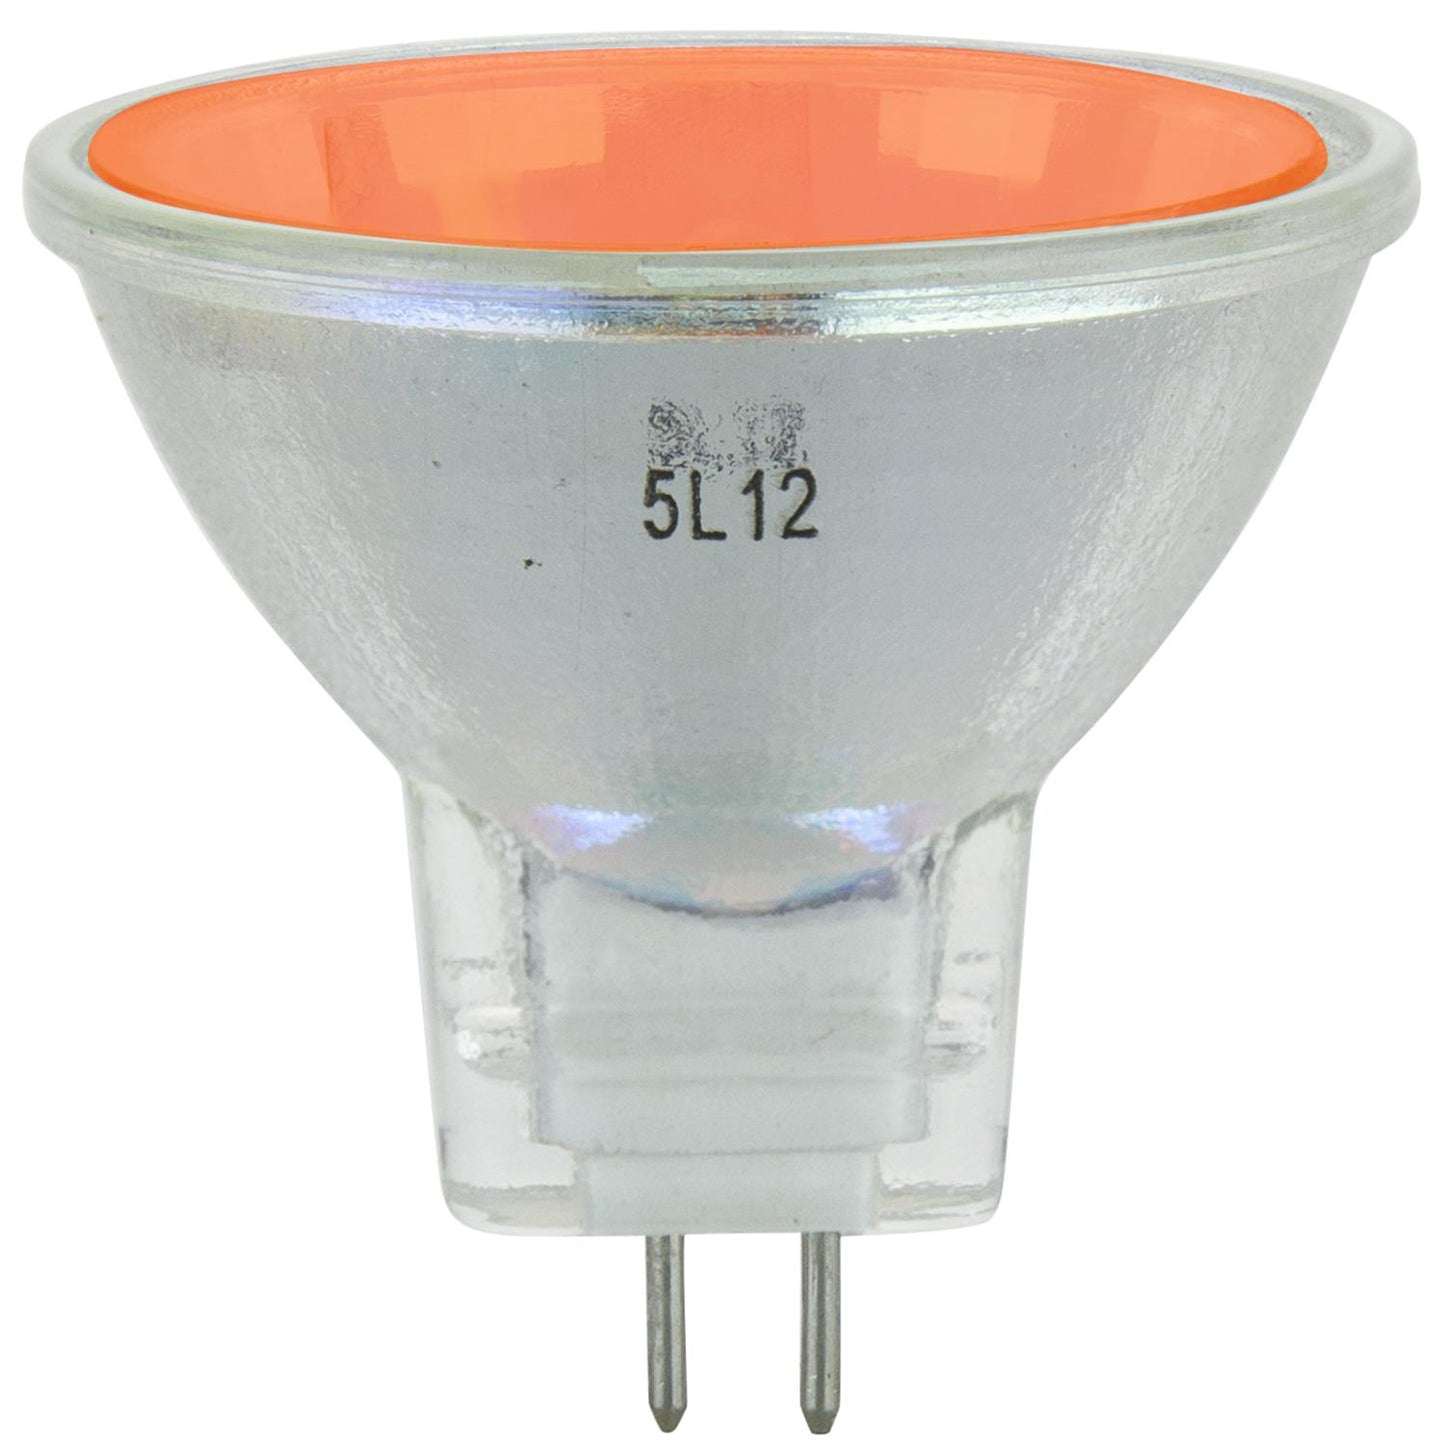 Sunlite 20 Watt, 10° Narrow Spot, Colored MR11 Mini Reflector with Cover Guard, GU4 Base, Orange